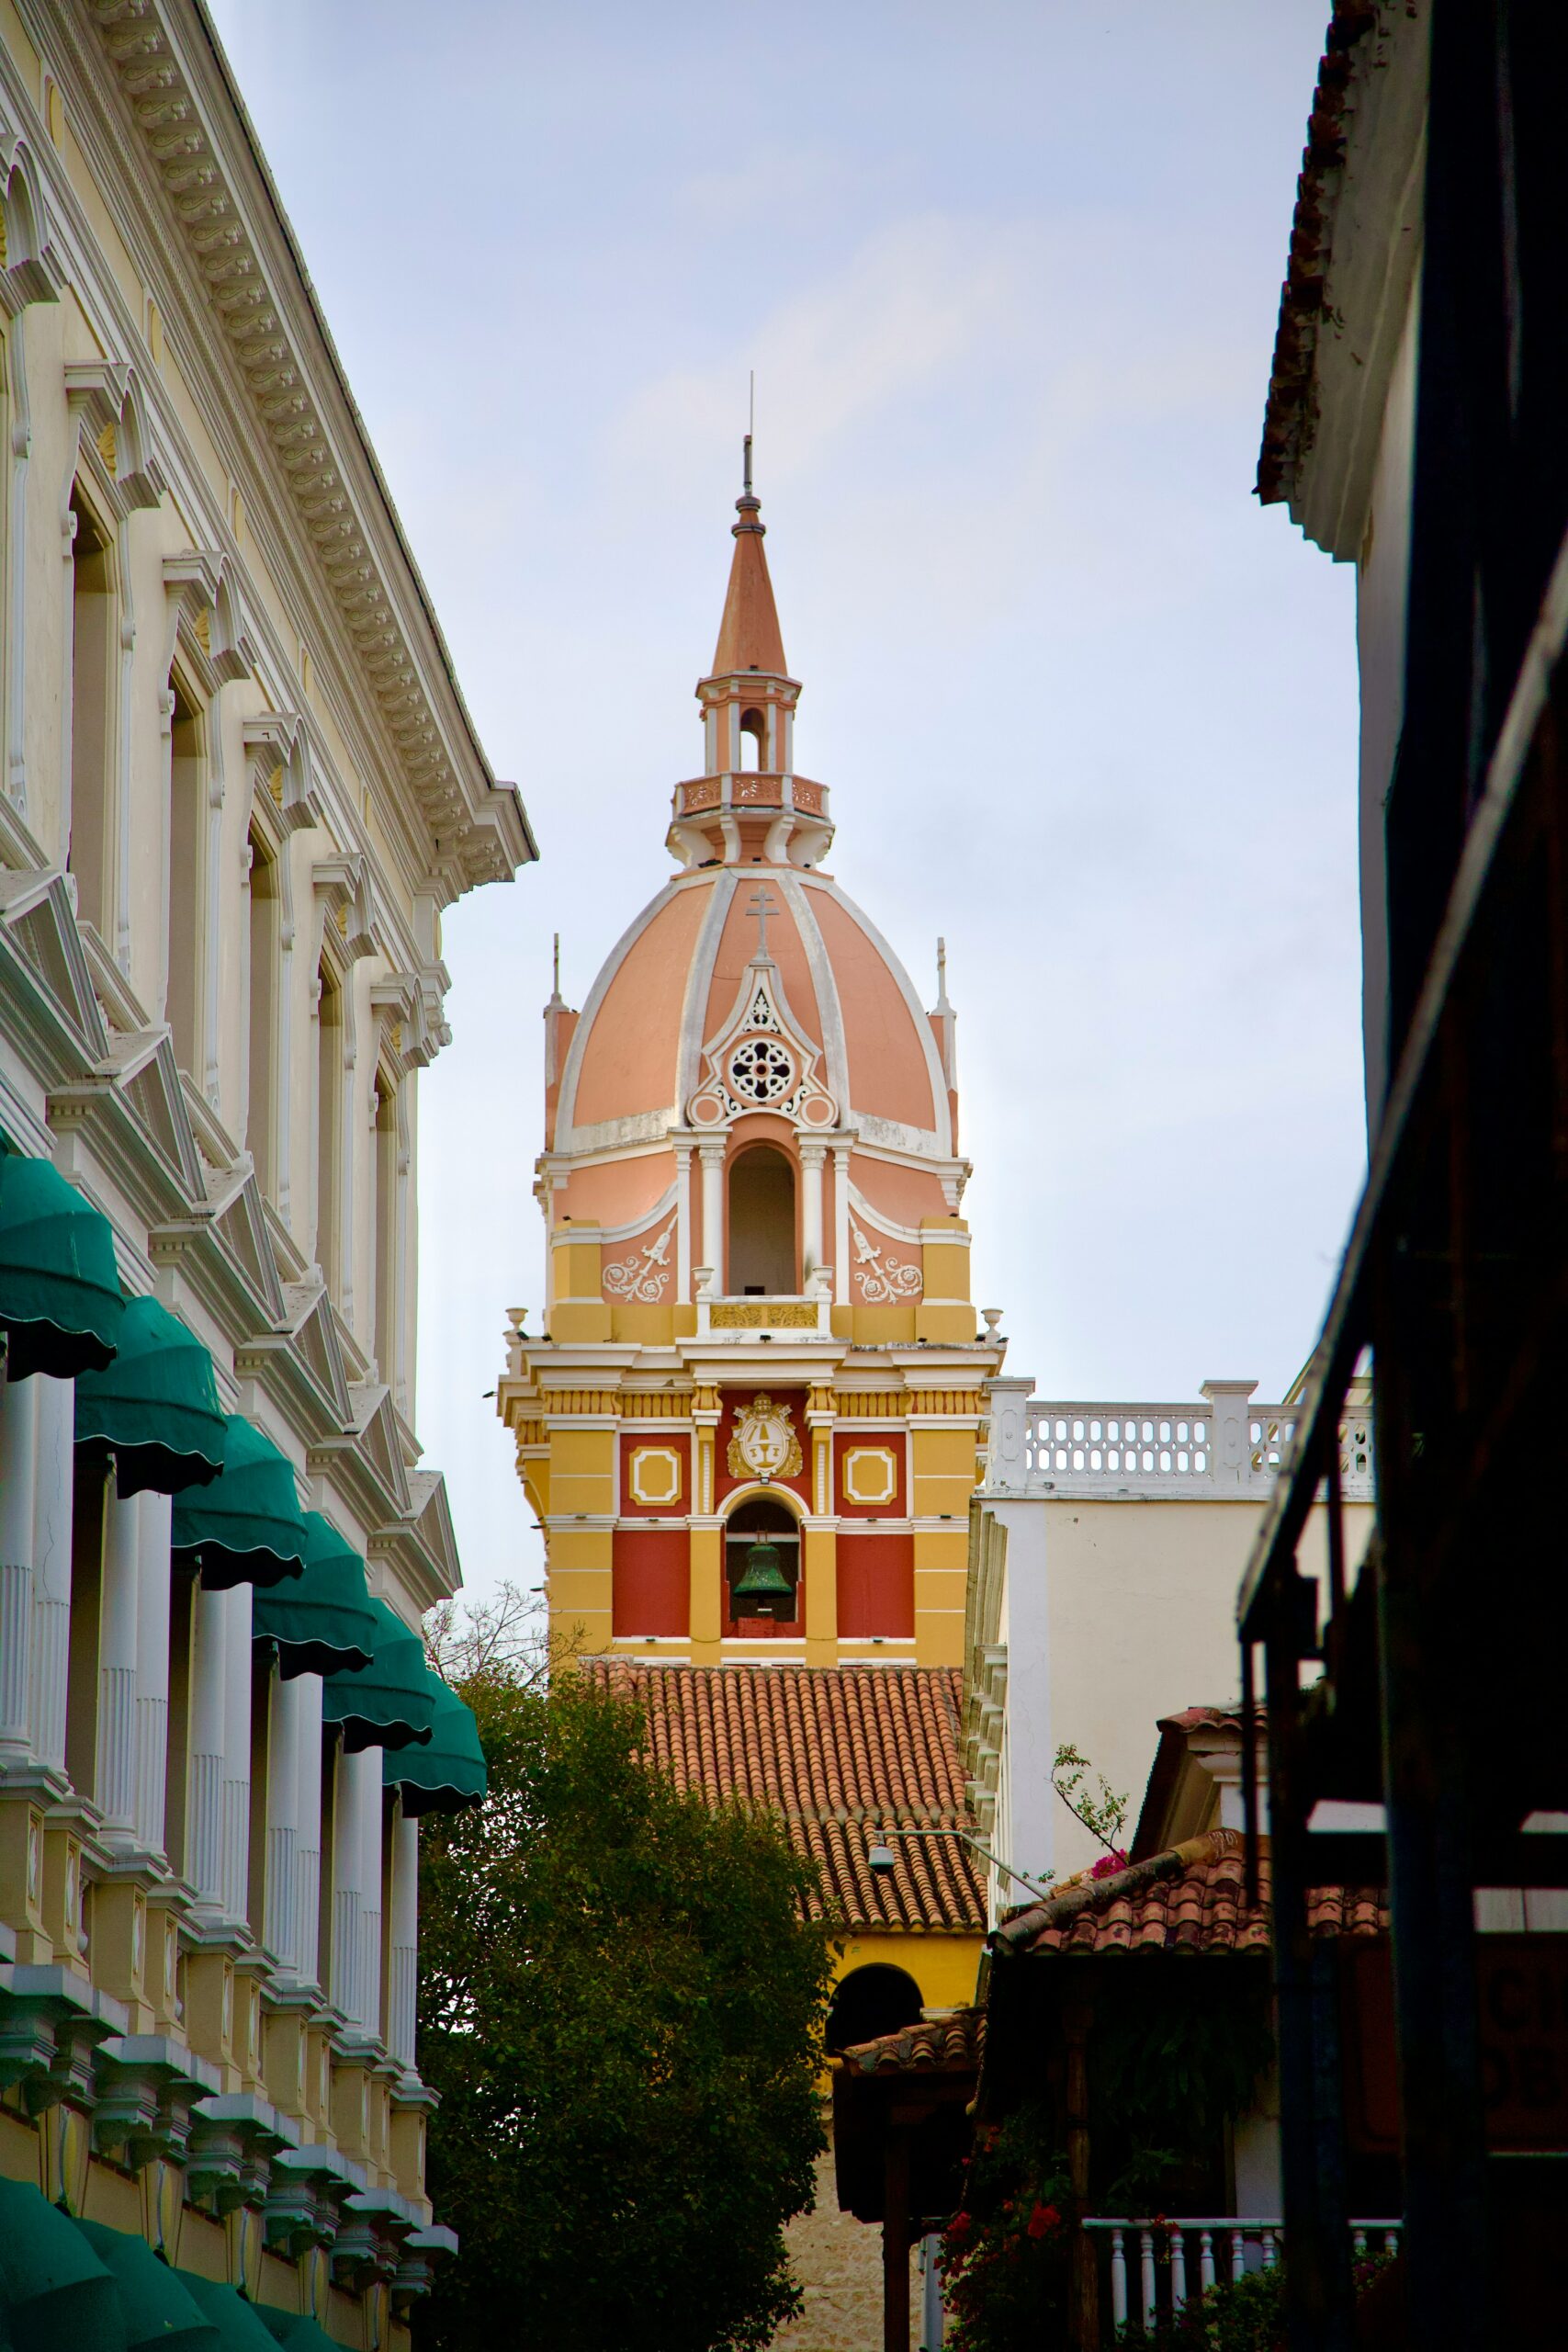 Conhecer a Catedral de Santa Catalina é um passeio em Cartagena para todos os gostos.